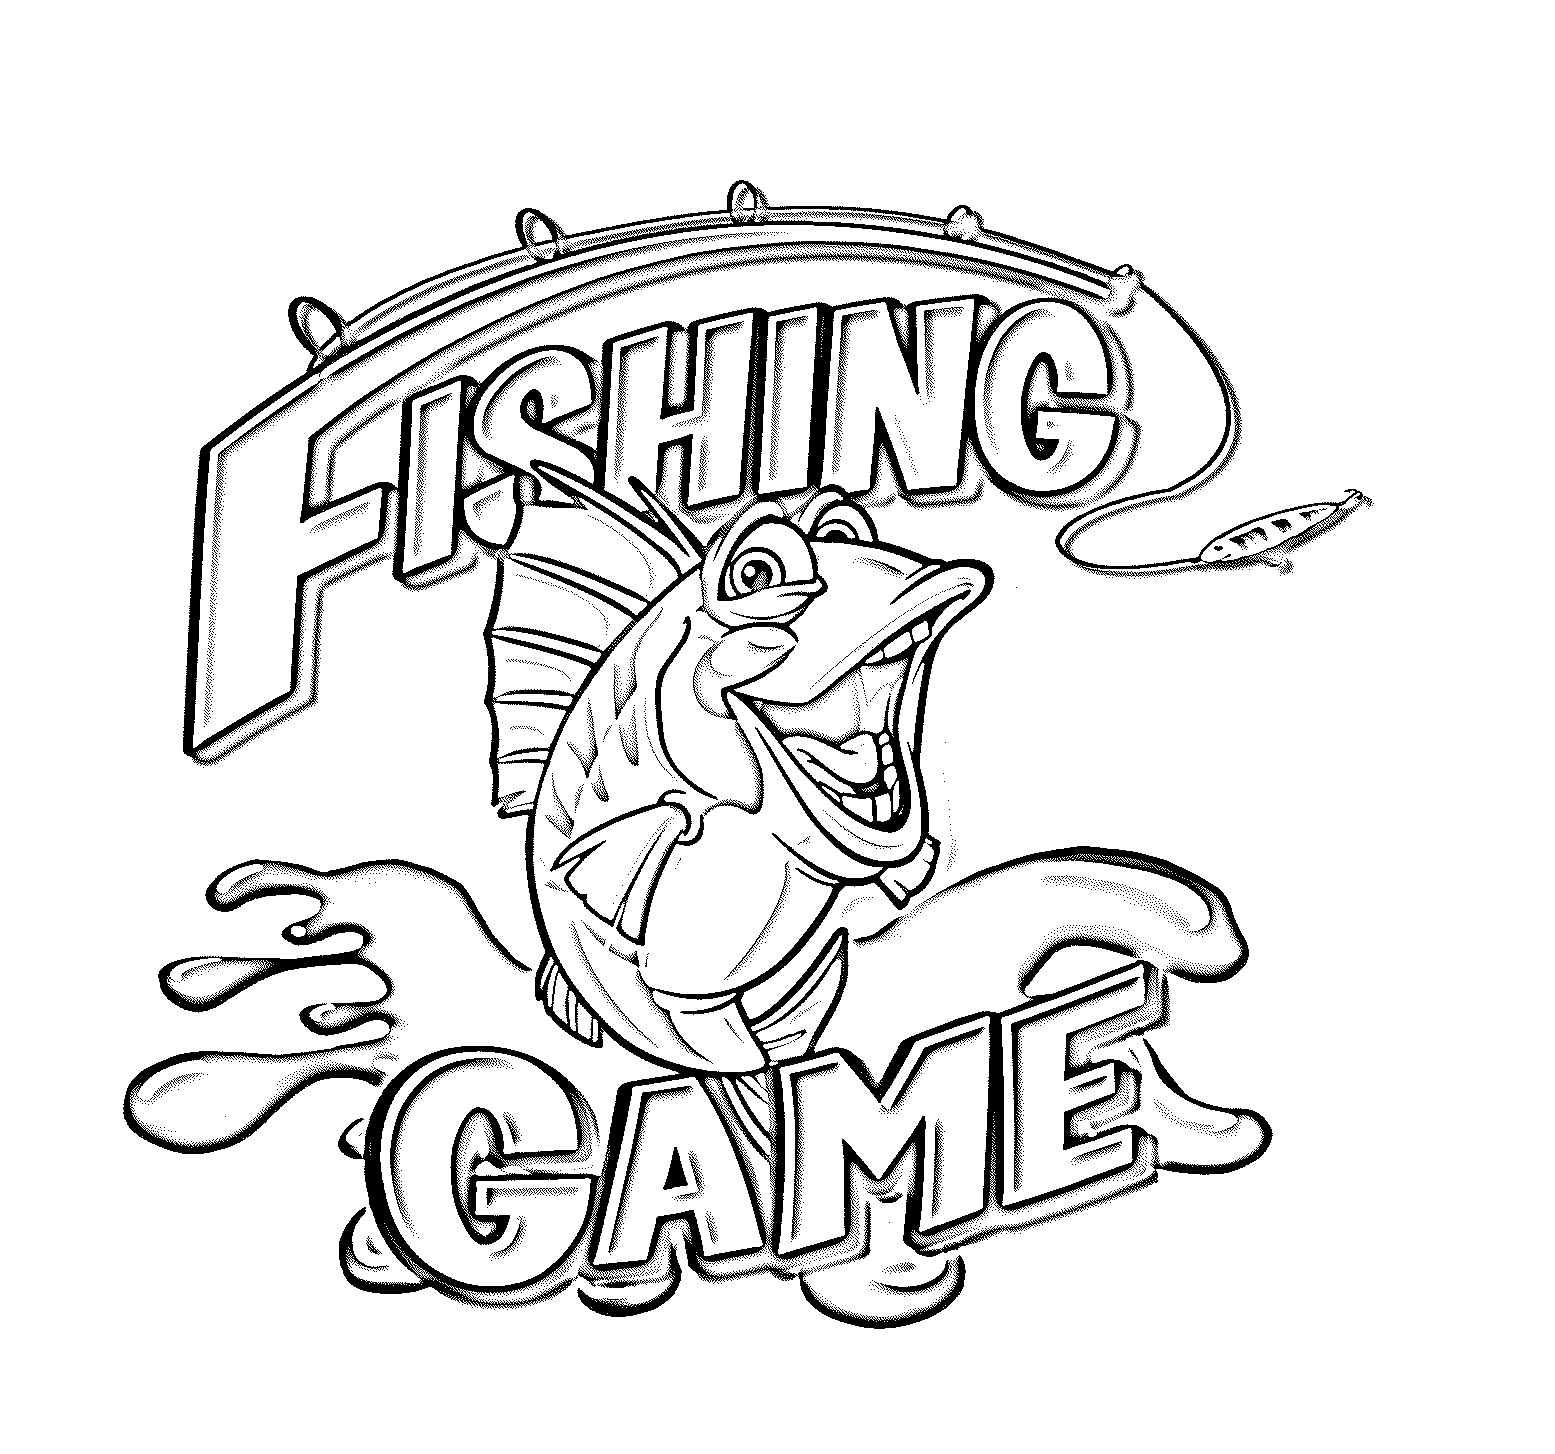  FISHING GAME